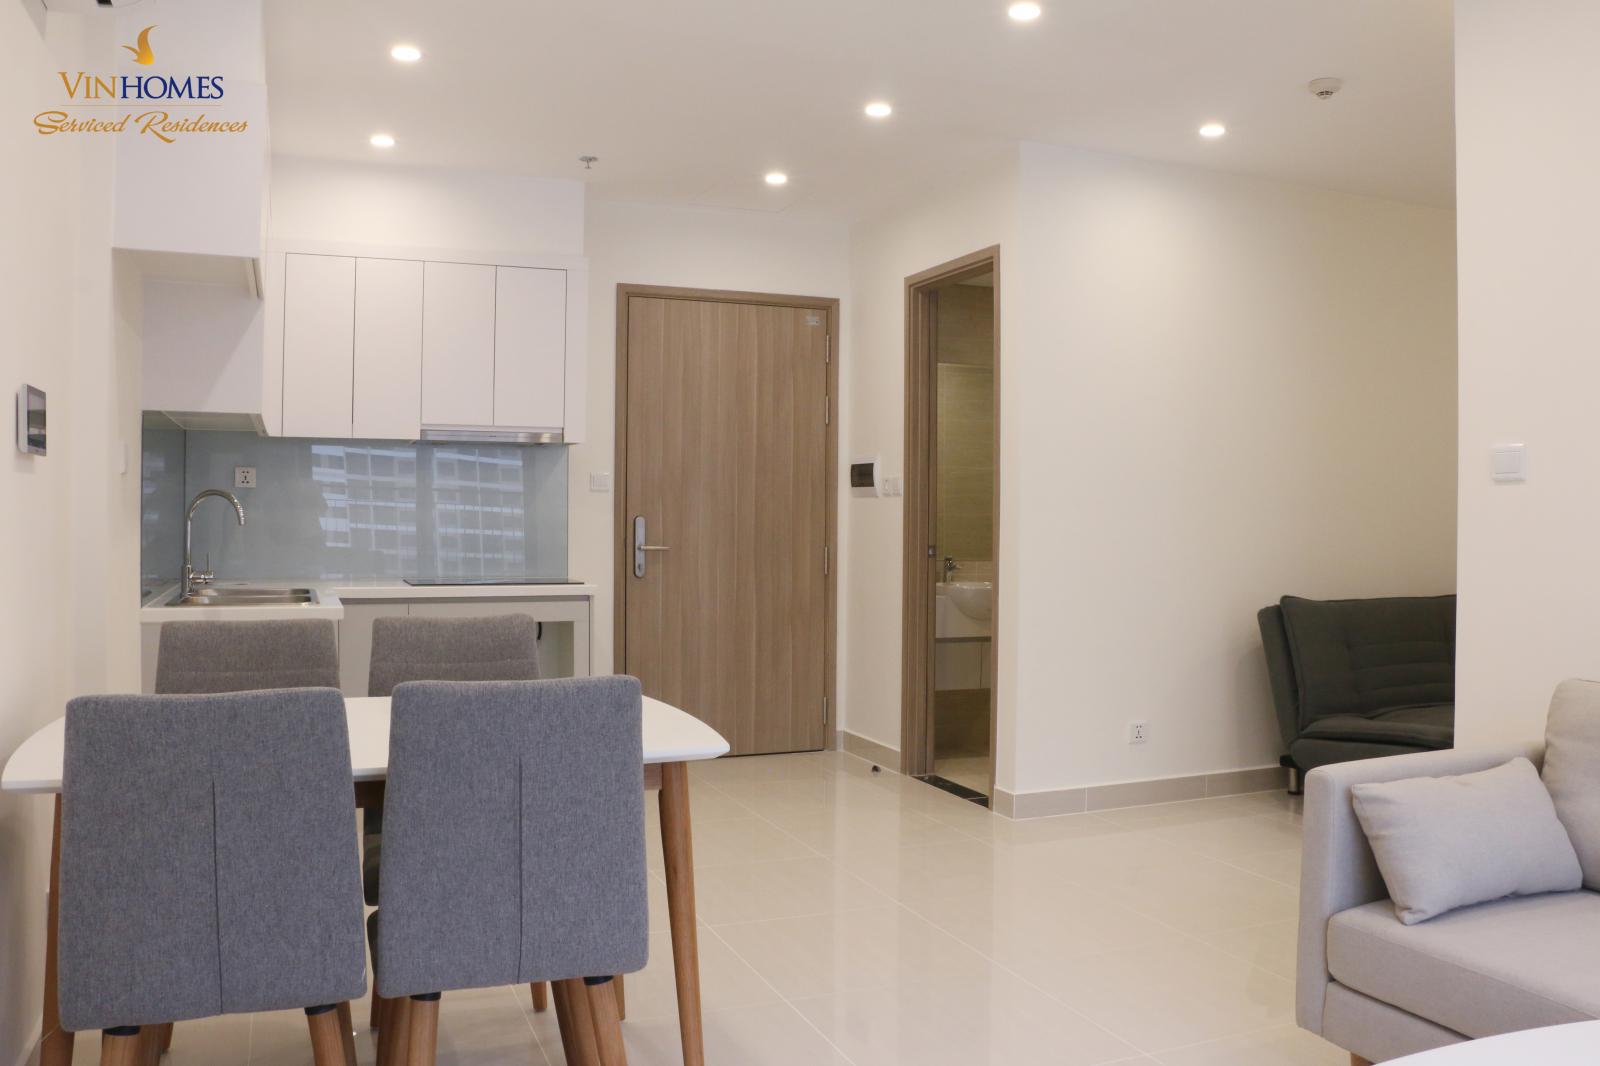 Cho thuê căn hộ 1PN+1 gần như đủ đồ giá chỉ 7,2 triệu/thg tại Vinhomes Smart City 11575295